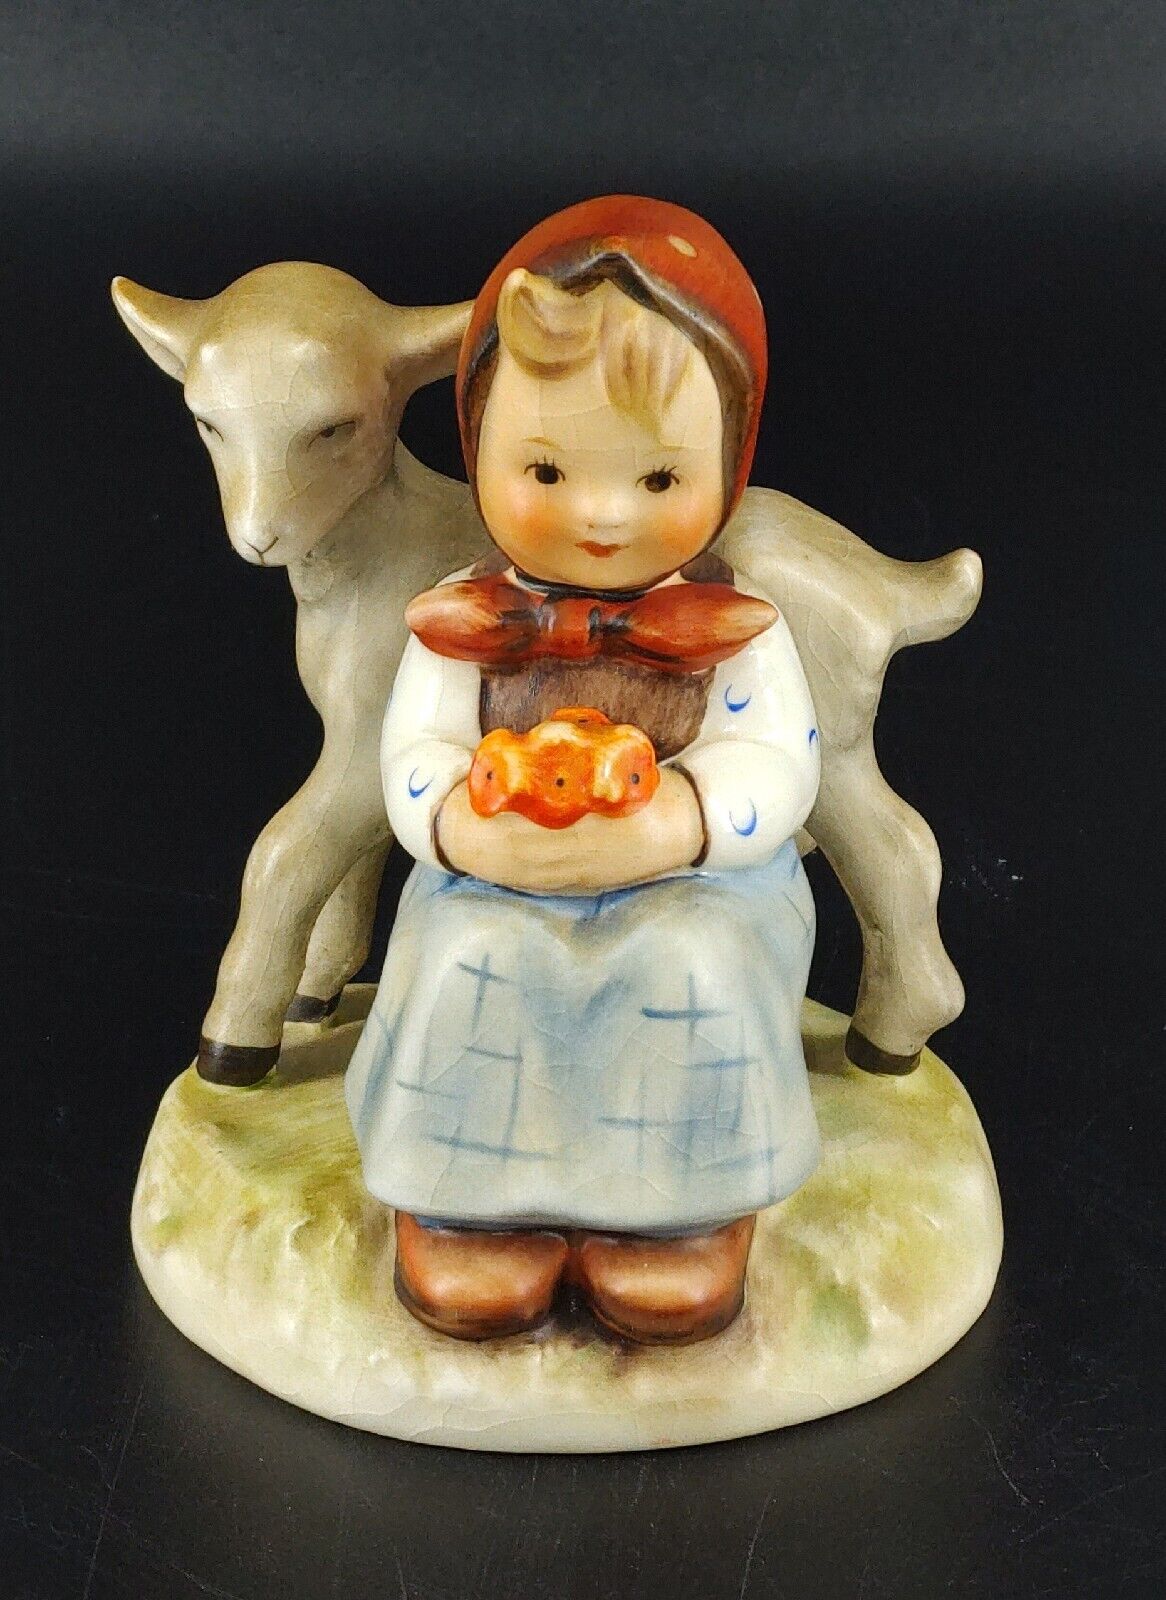 Vintage Goebel MJ Hummel “Good Friends”  #182 Porcelain Figurine West Germany